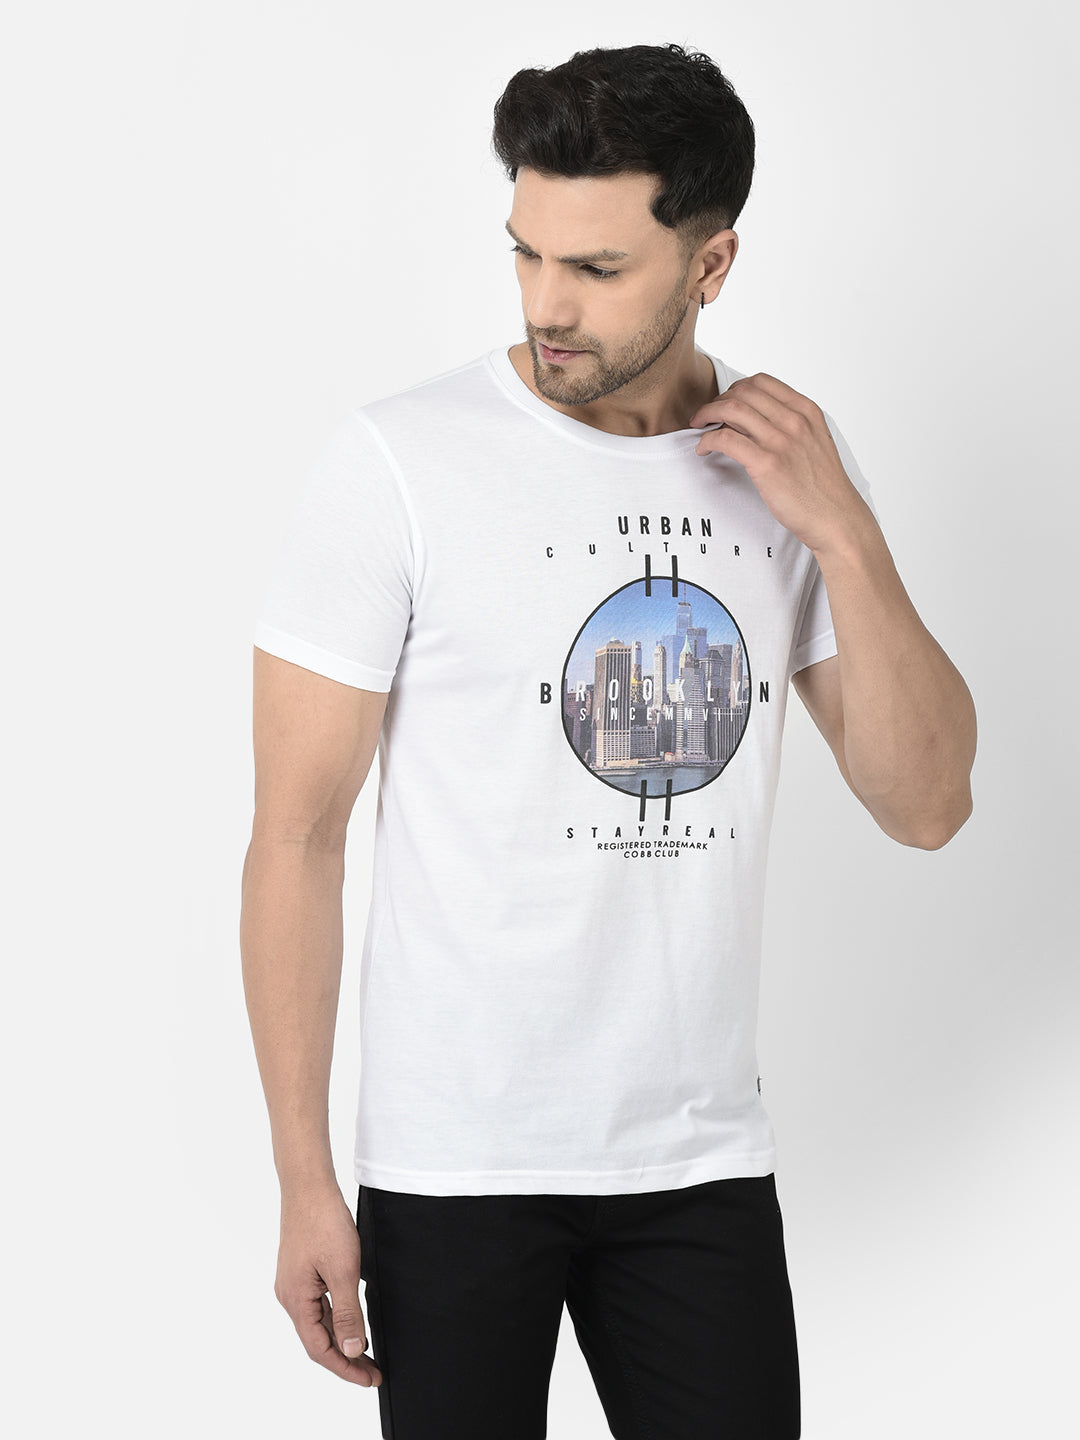 Cobb White Printed Round Neck T-Shirt